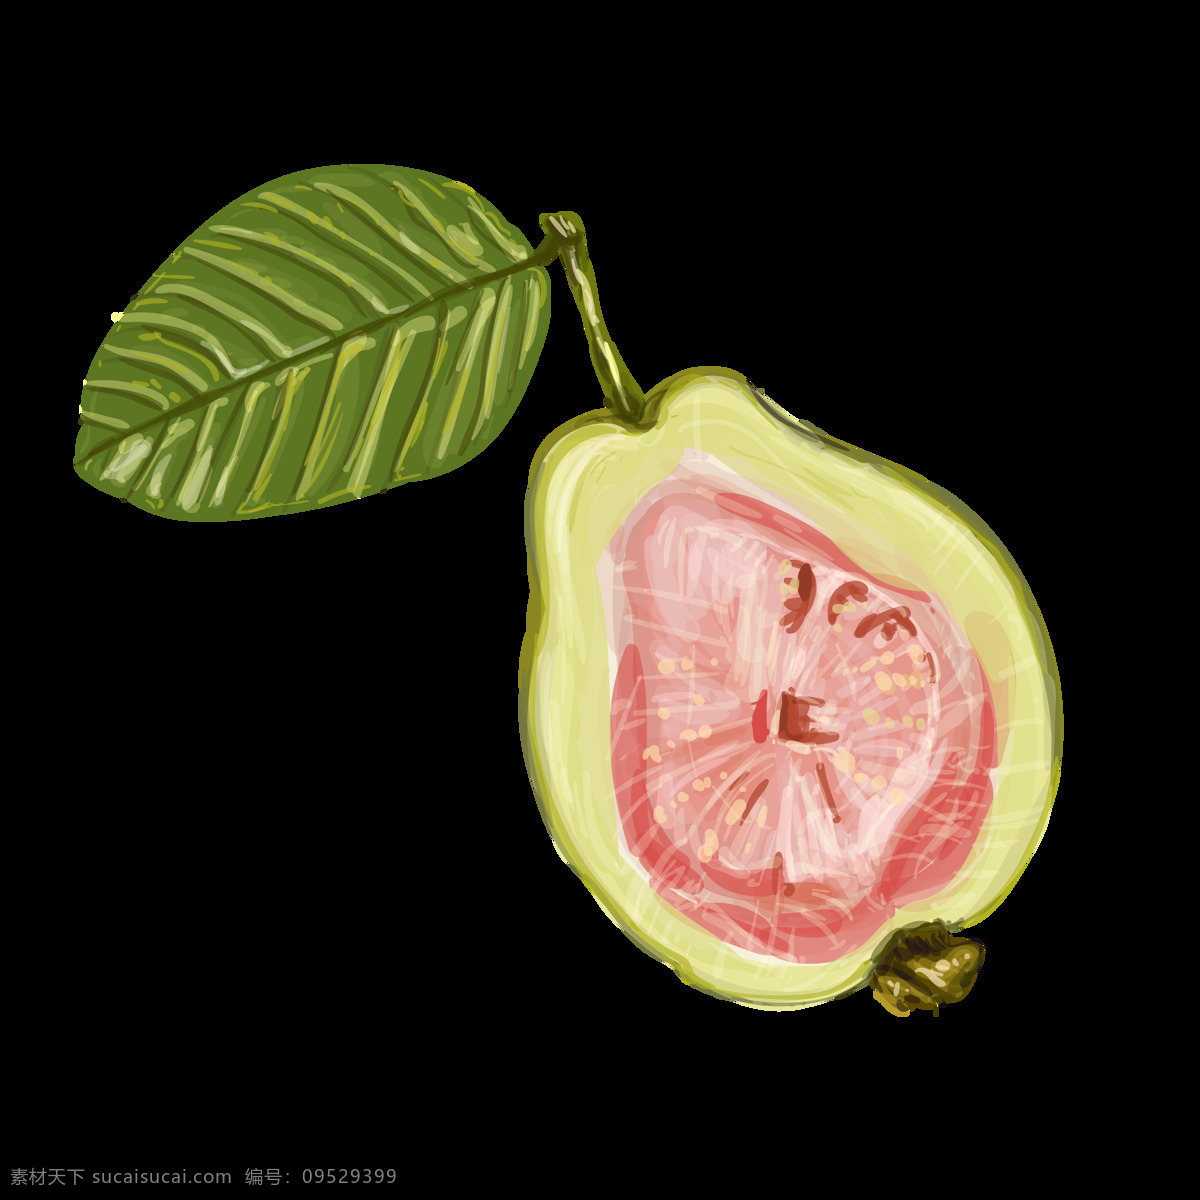 手绘 涂鸦 水果 插画 水彩 鲜榨果汁 奶茶店铺 菜单 广告海报 食物 热带水果 香蕉 苹果 樱桃 椰子 橘子 西瓜